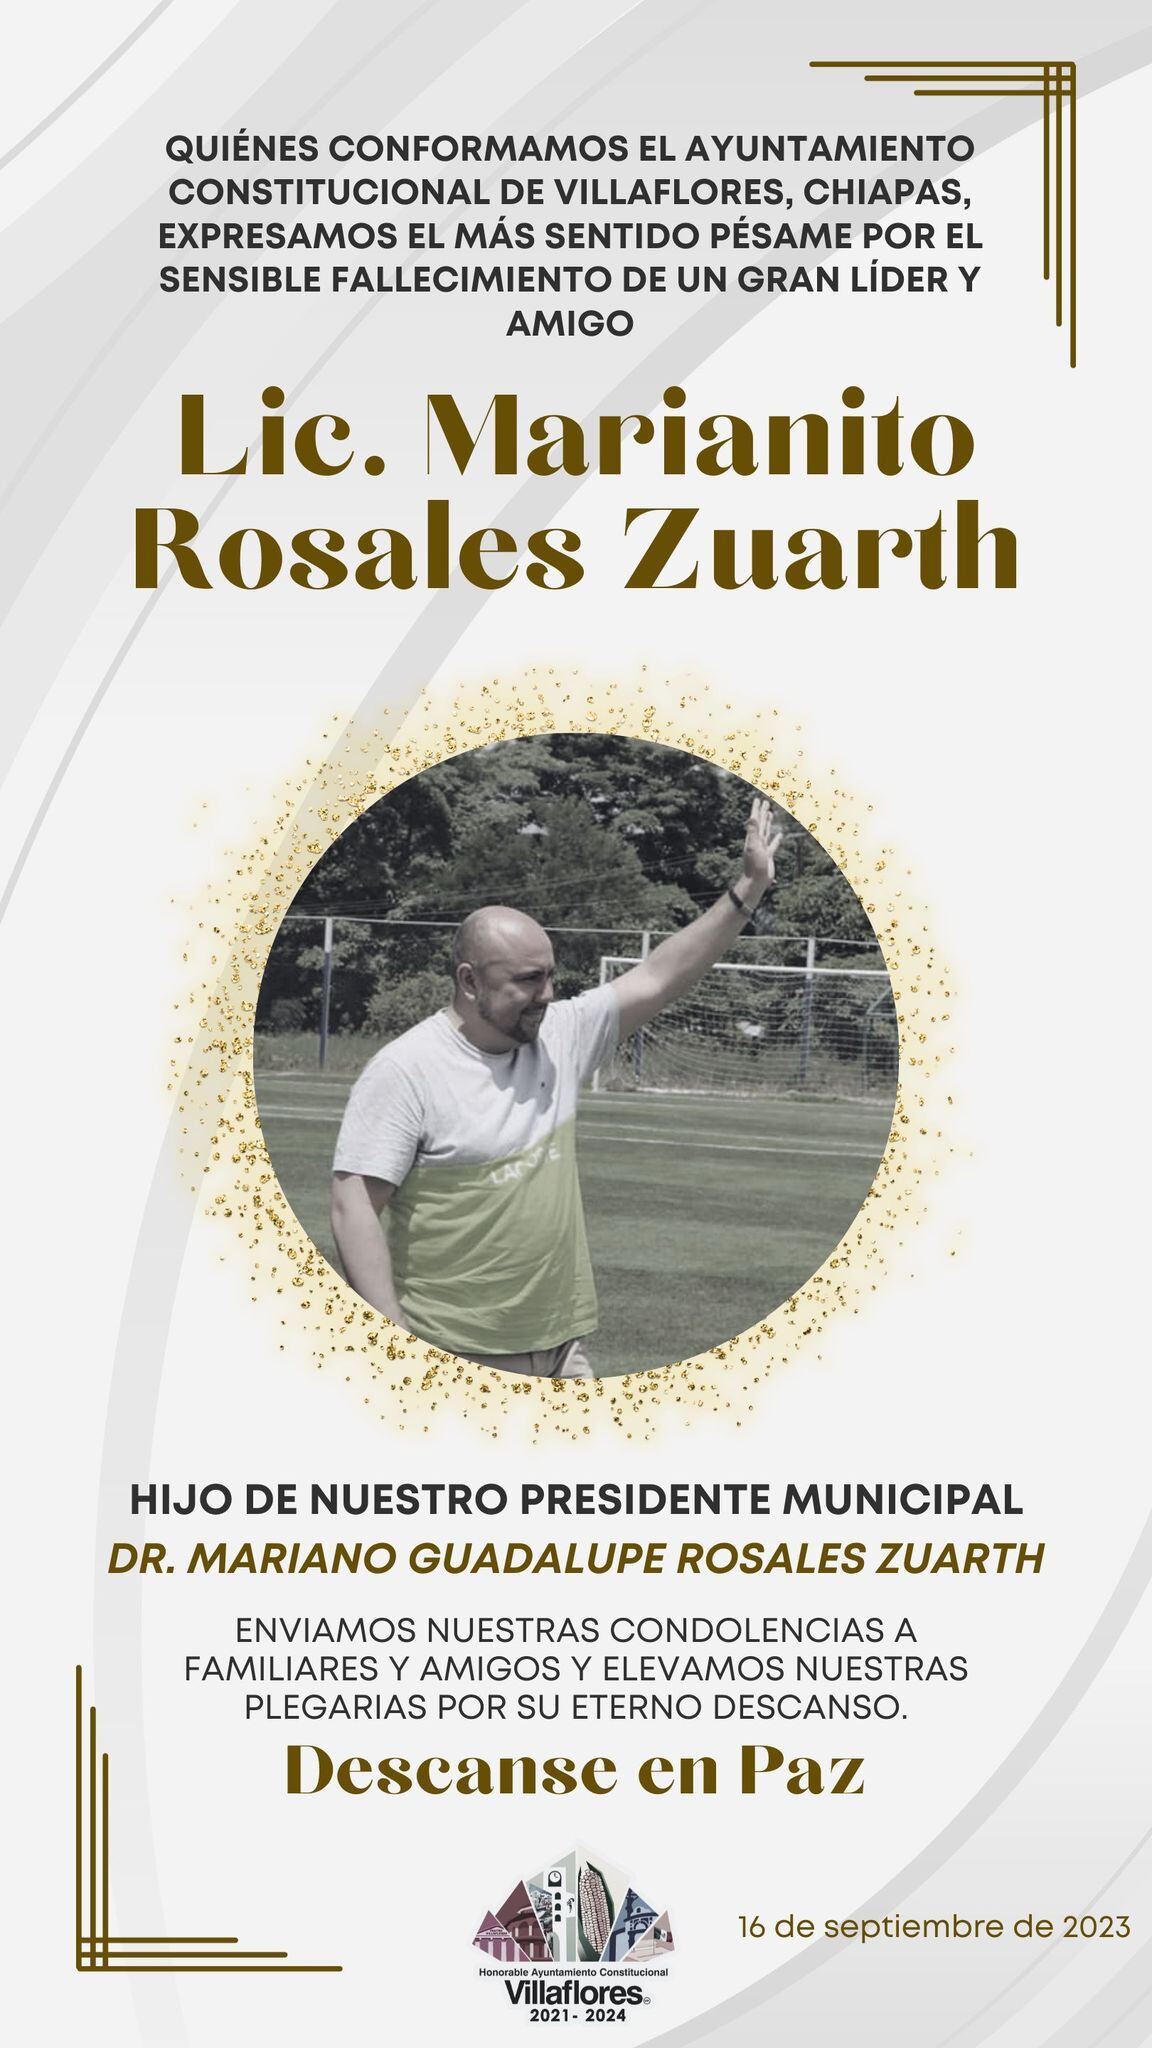 El Ayuntamiento de Villaflores confirmó el fallecimiento de Mariano Rosales al mediodía del 16 de septiembre (Foto: Ayuntamiento Villaflores)